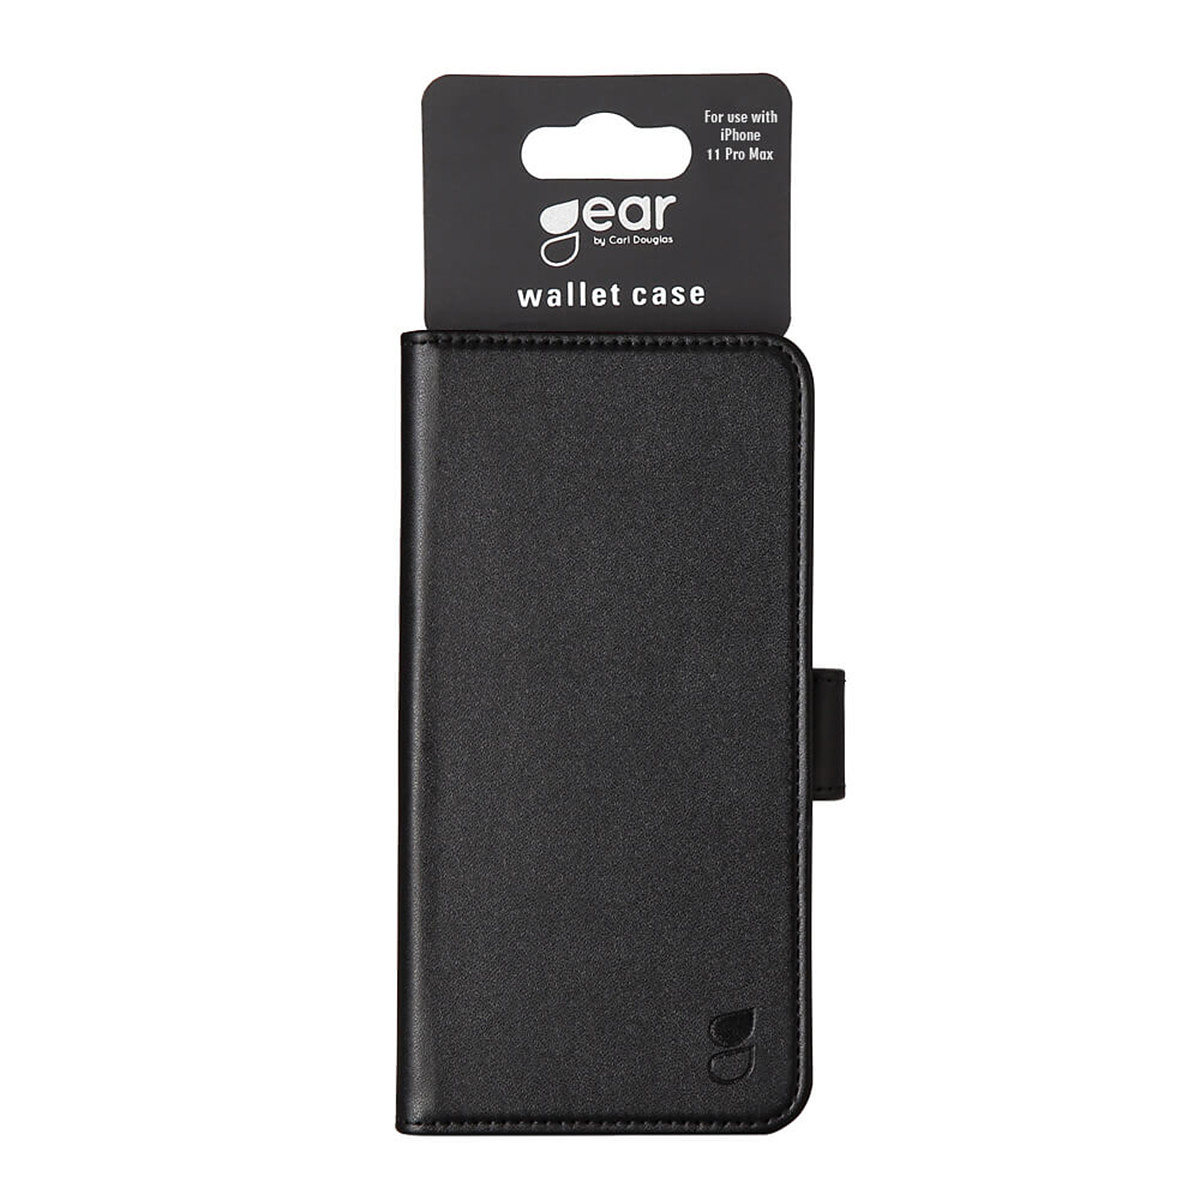 Gear plånboksväska, iPhone 11 Pro Max, svart